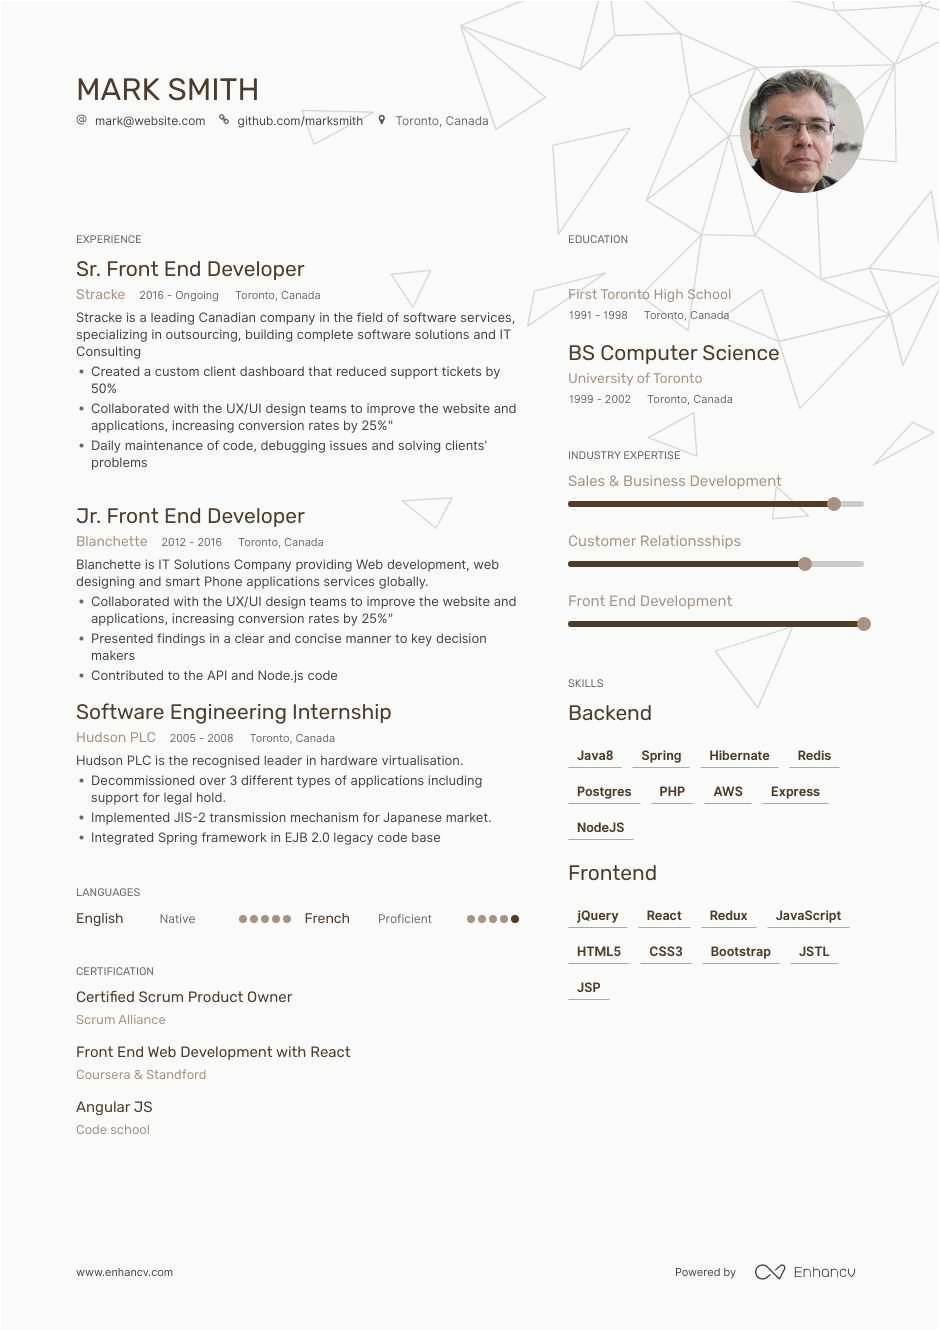 Sample Resume for Front End Developer Front End Developer Resume Guide Samples & Expert Tips